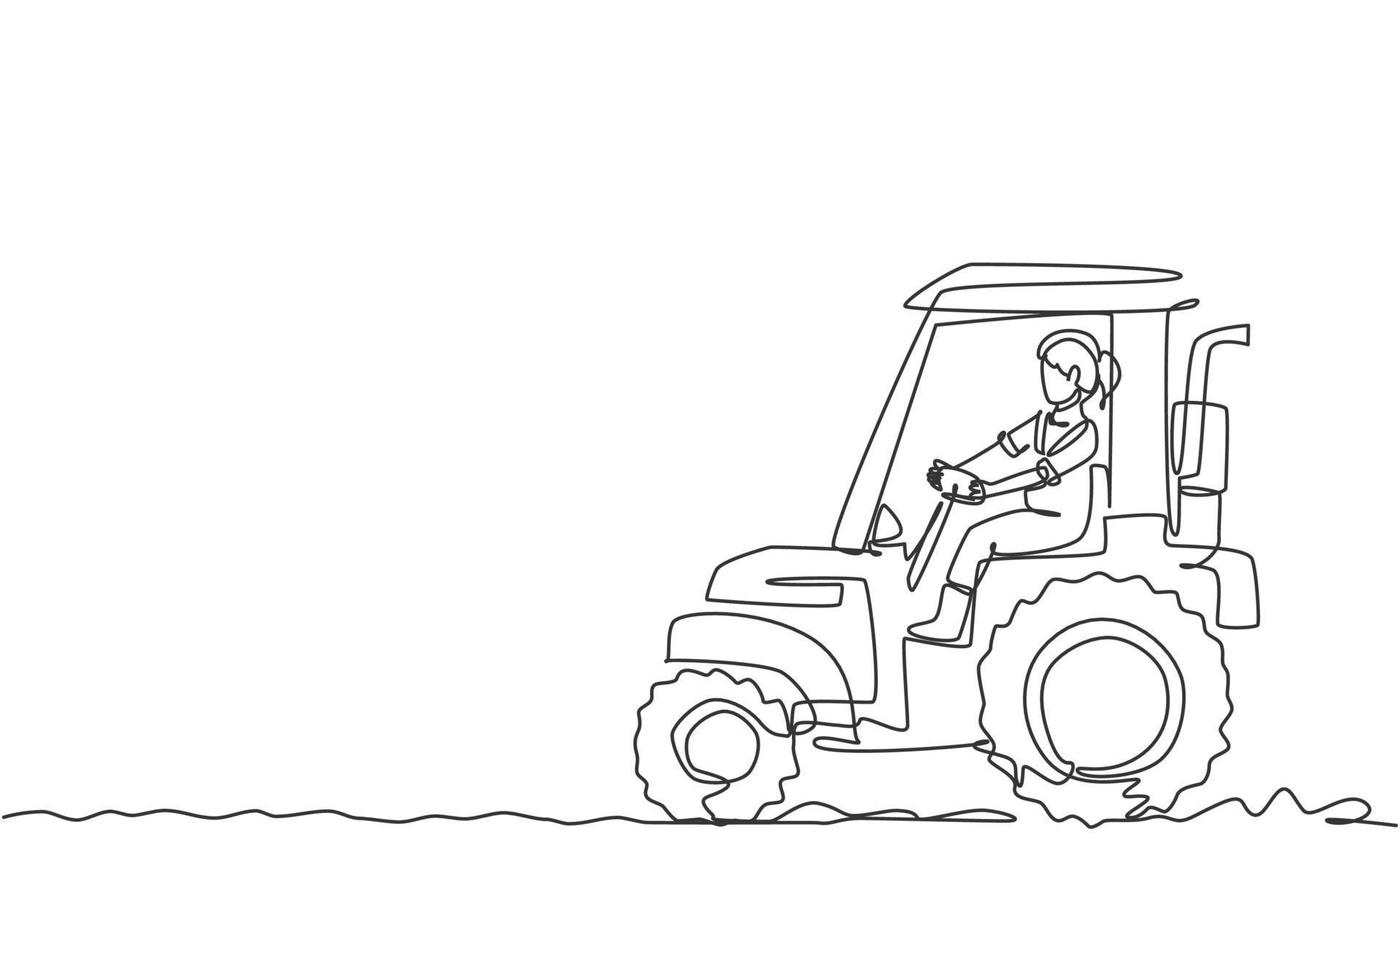 dibujo de una sola línea de una joven agricultora que conduce un tractor para arar los campos. concepto mínimo de desafío agrícola exitoso. Ilustración de vector gráfico de diseño de dibujo de línea continua moderna.